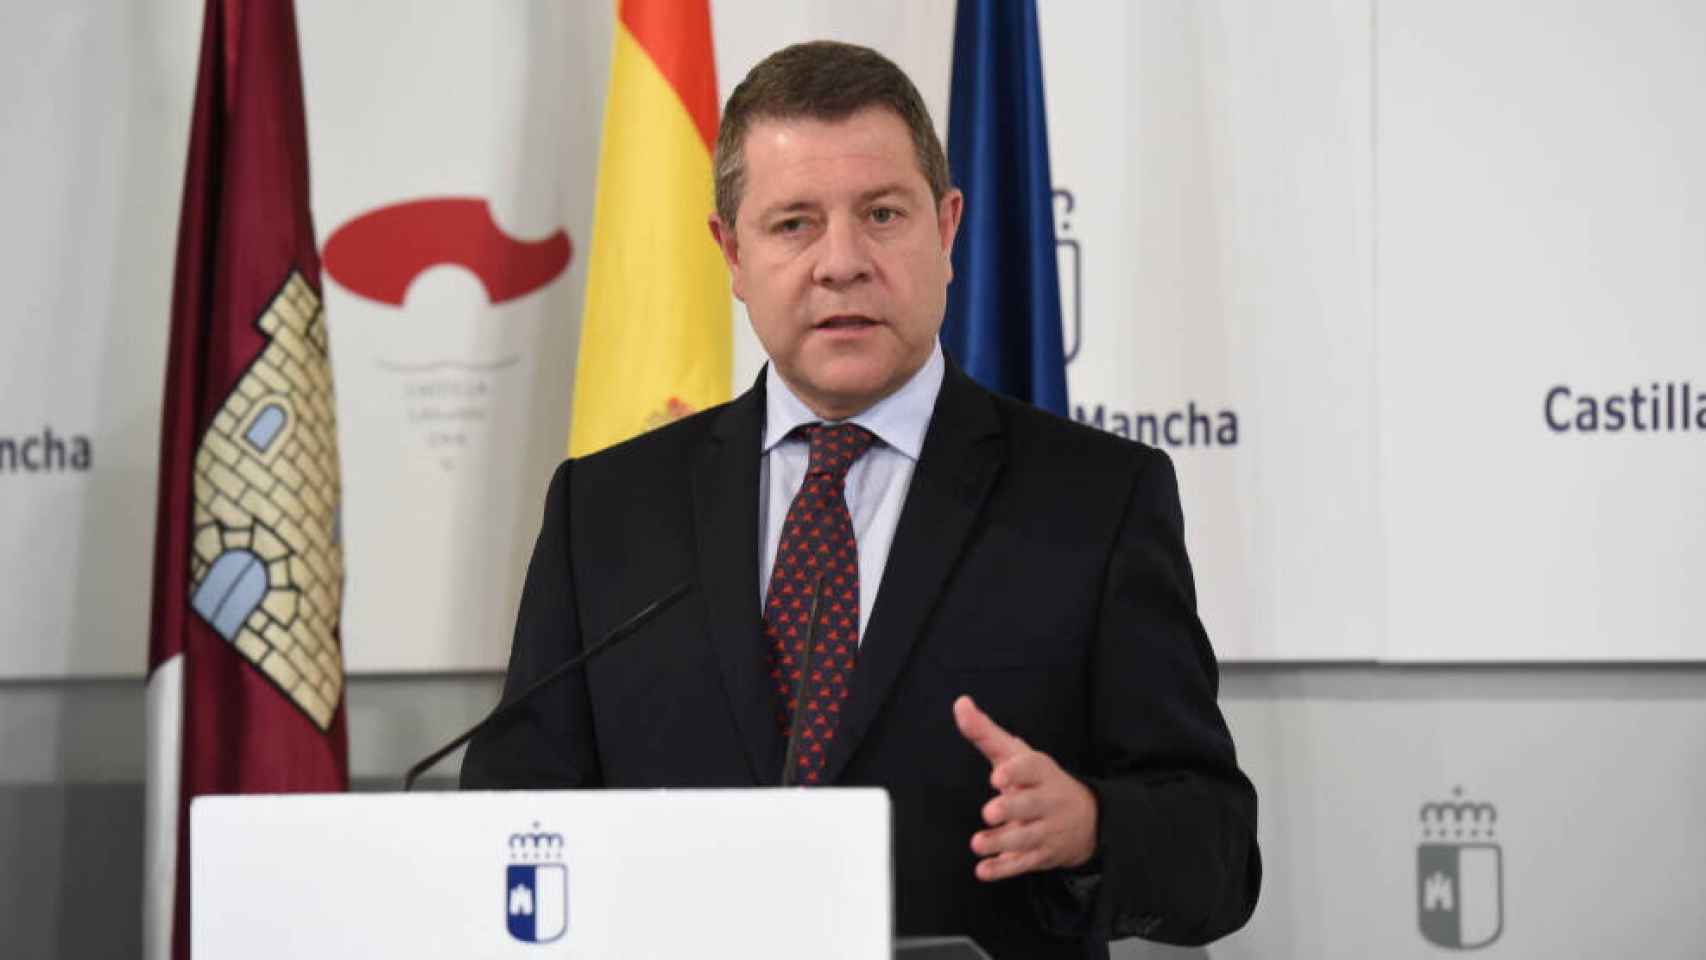 El presidente de Castilla-La Mancha, Emiliano García-Page, en una imagen reciente